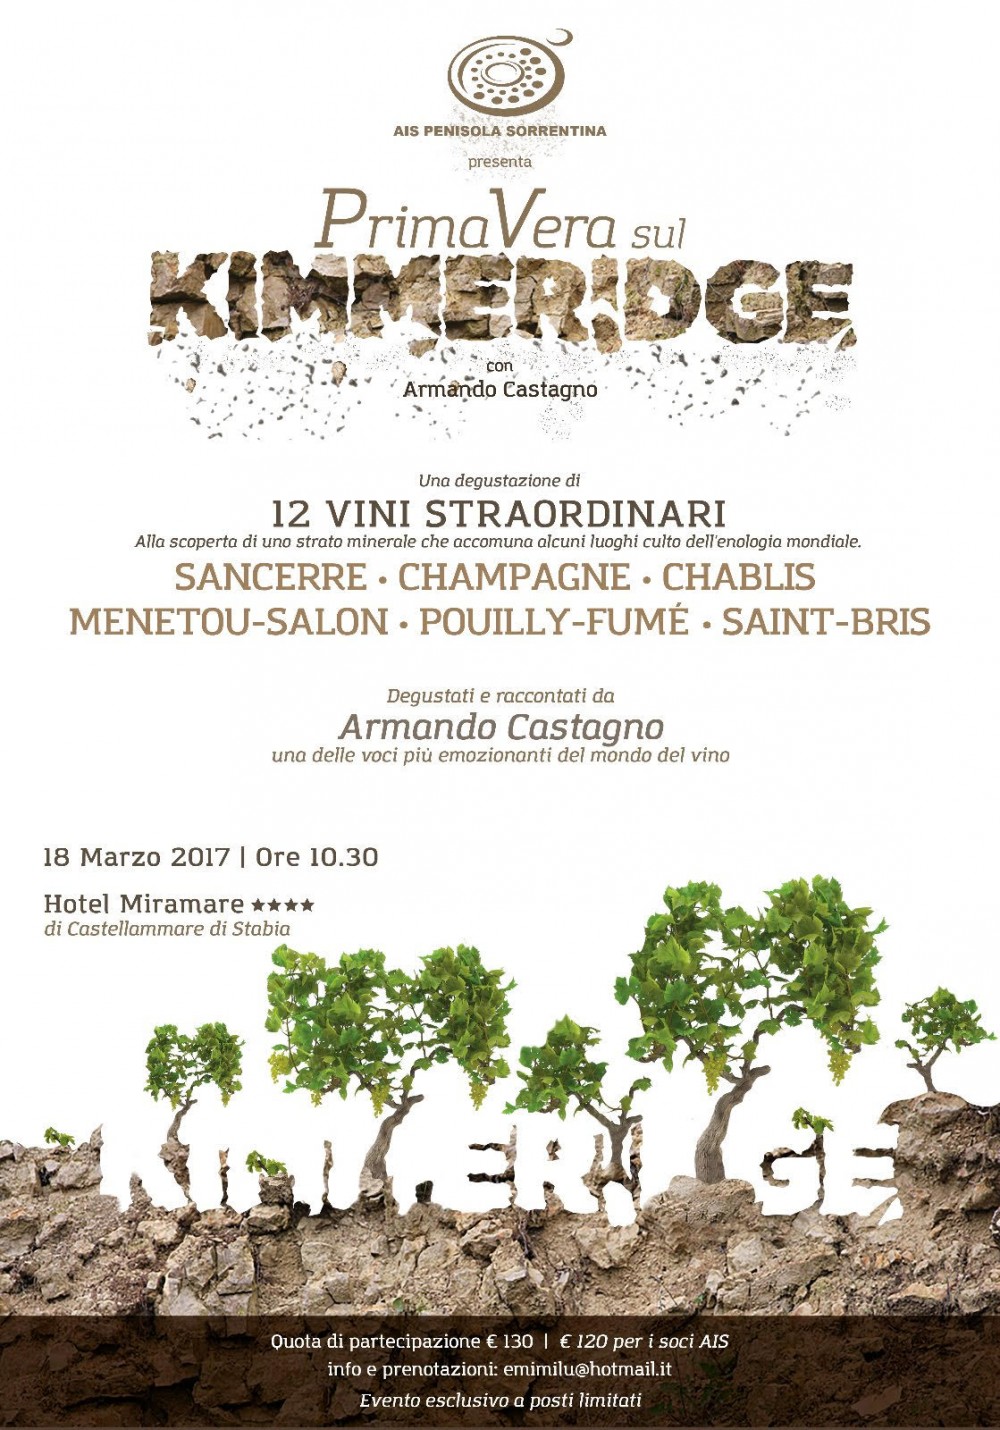 PrimaVera sul Kimmeridge con Armando Castagno